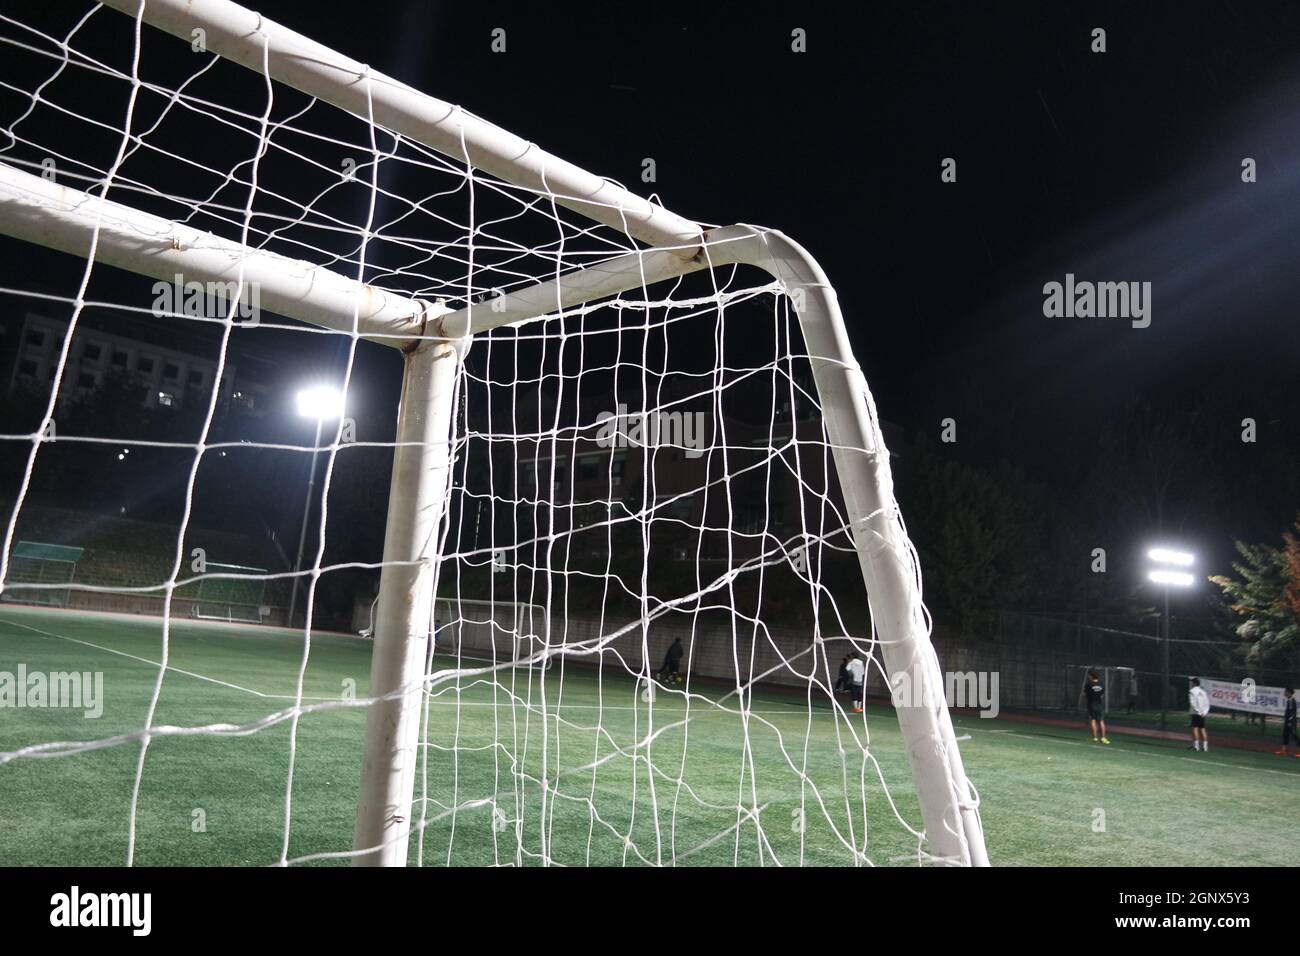 Nachtansicht eines Fußballtor-Netzes unter Flutlicht. Nahaufnahme des Tornetzes auf einem Fußballplatz Stockfoto